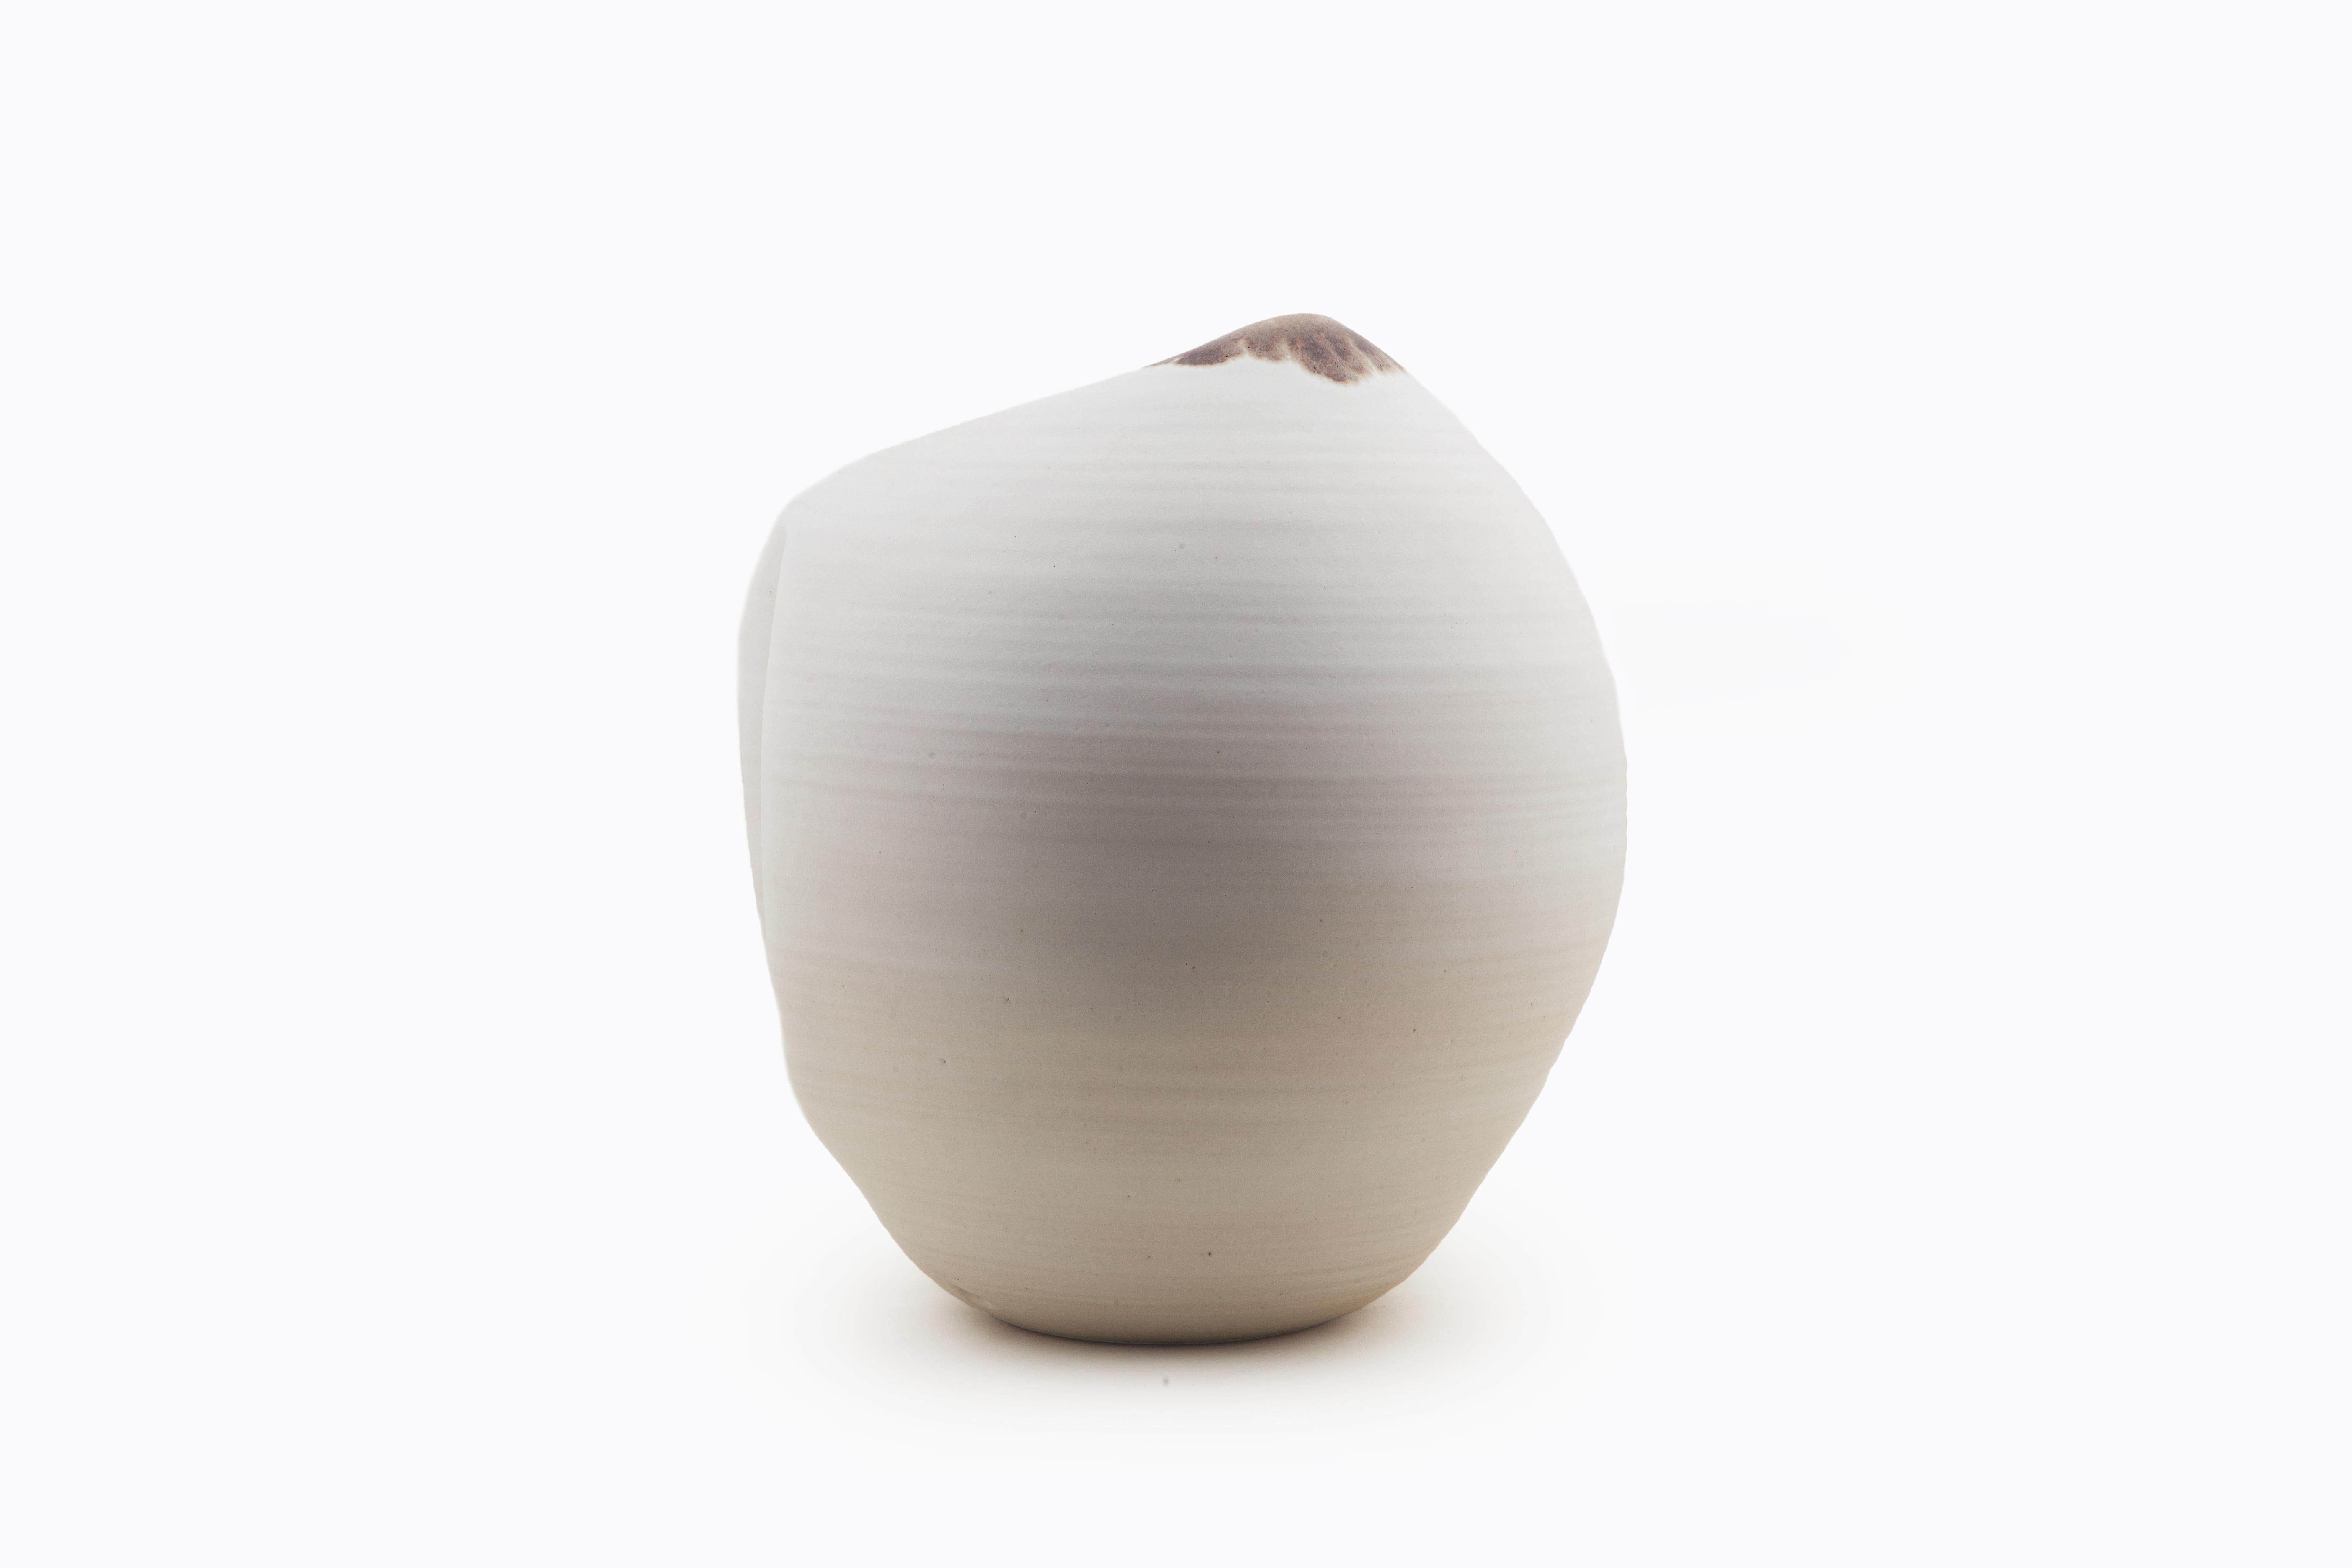 Organic Modern White Indented Form, Vase, Interior Sculpture or Vessel, Objet D'Art